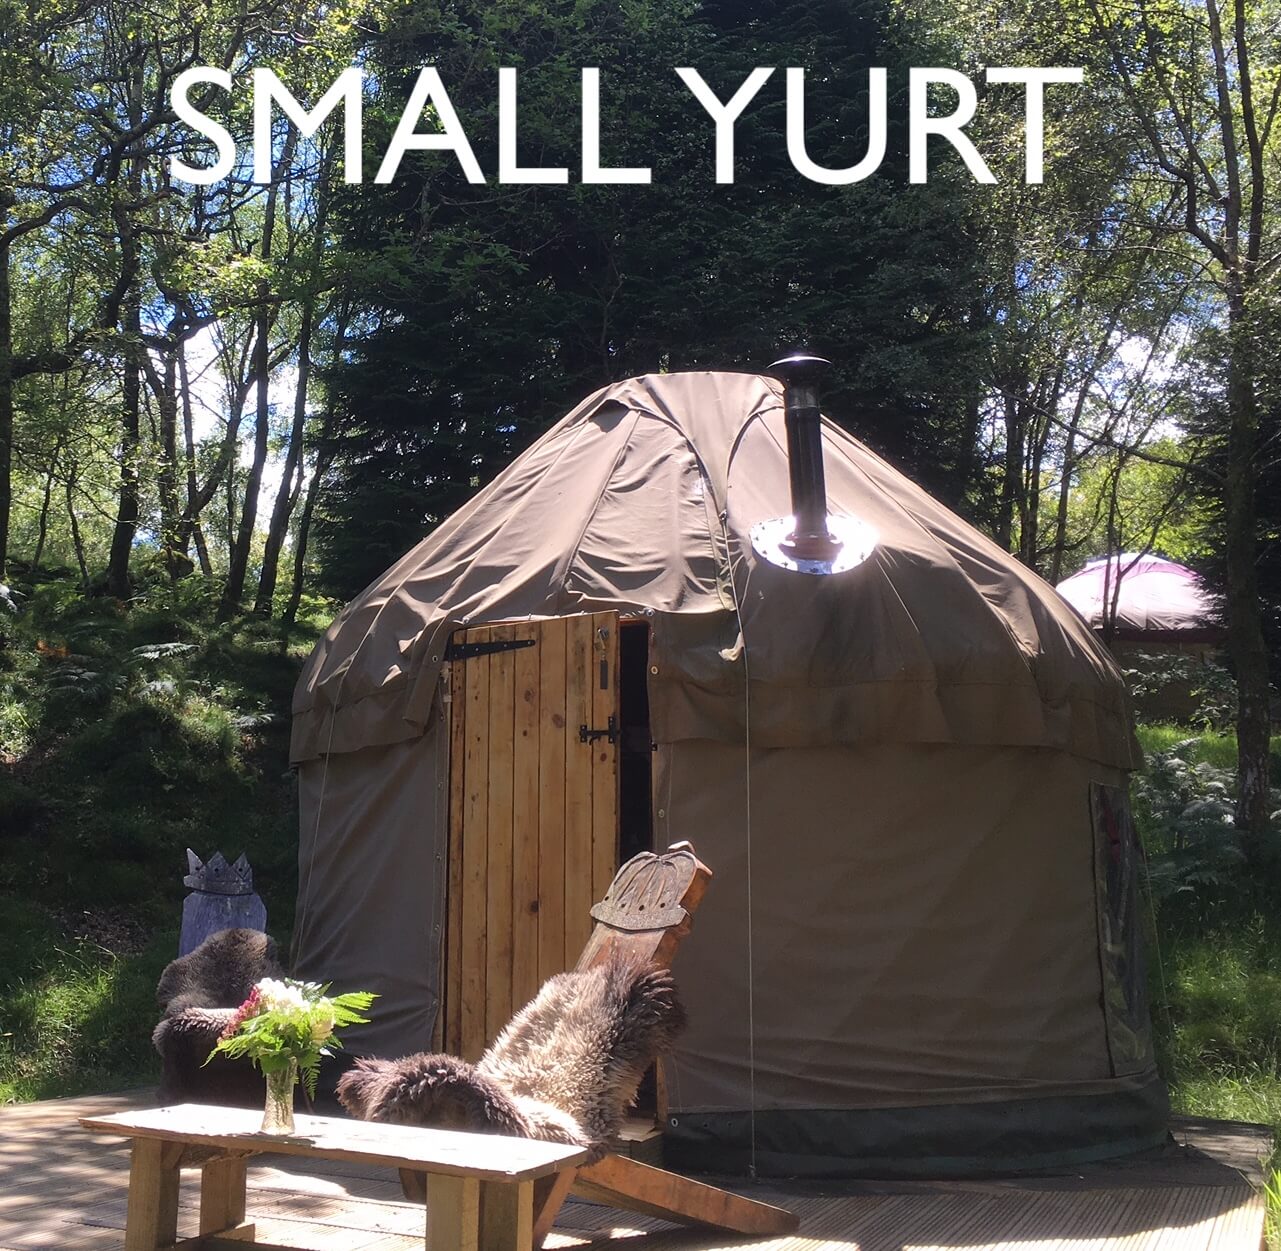 A small Snowdonia accommodation yurt